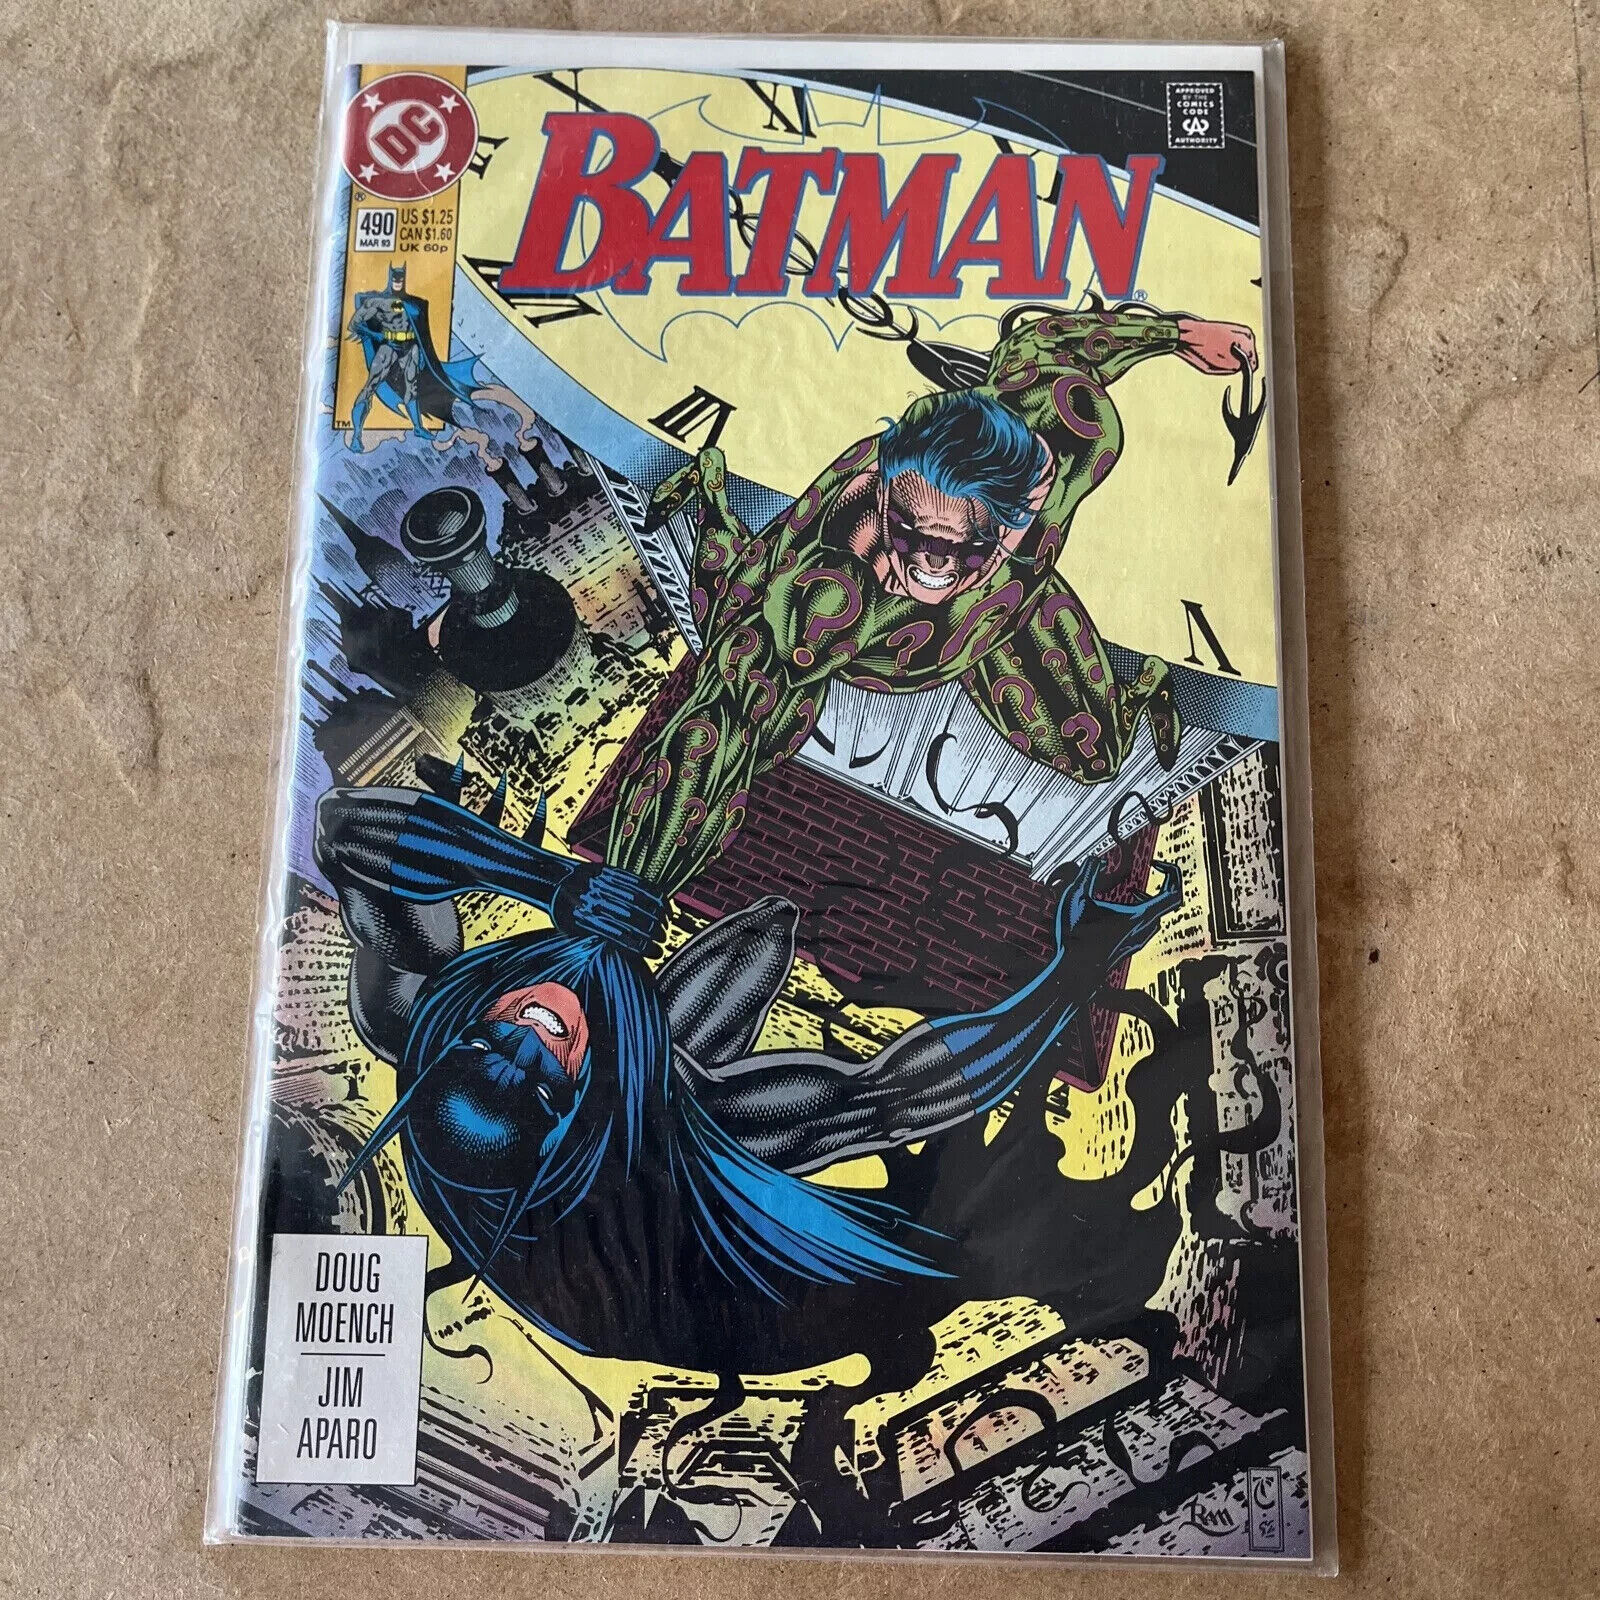 Batman #490 (Mar 1993, DC)